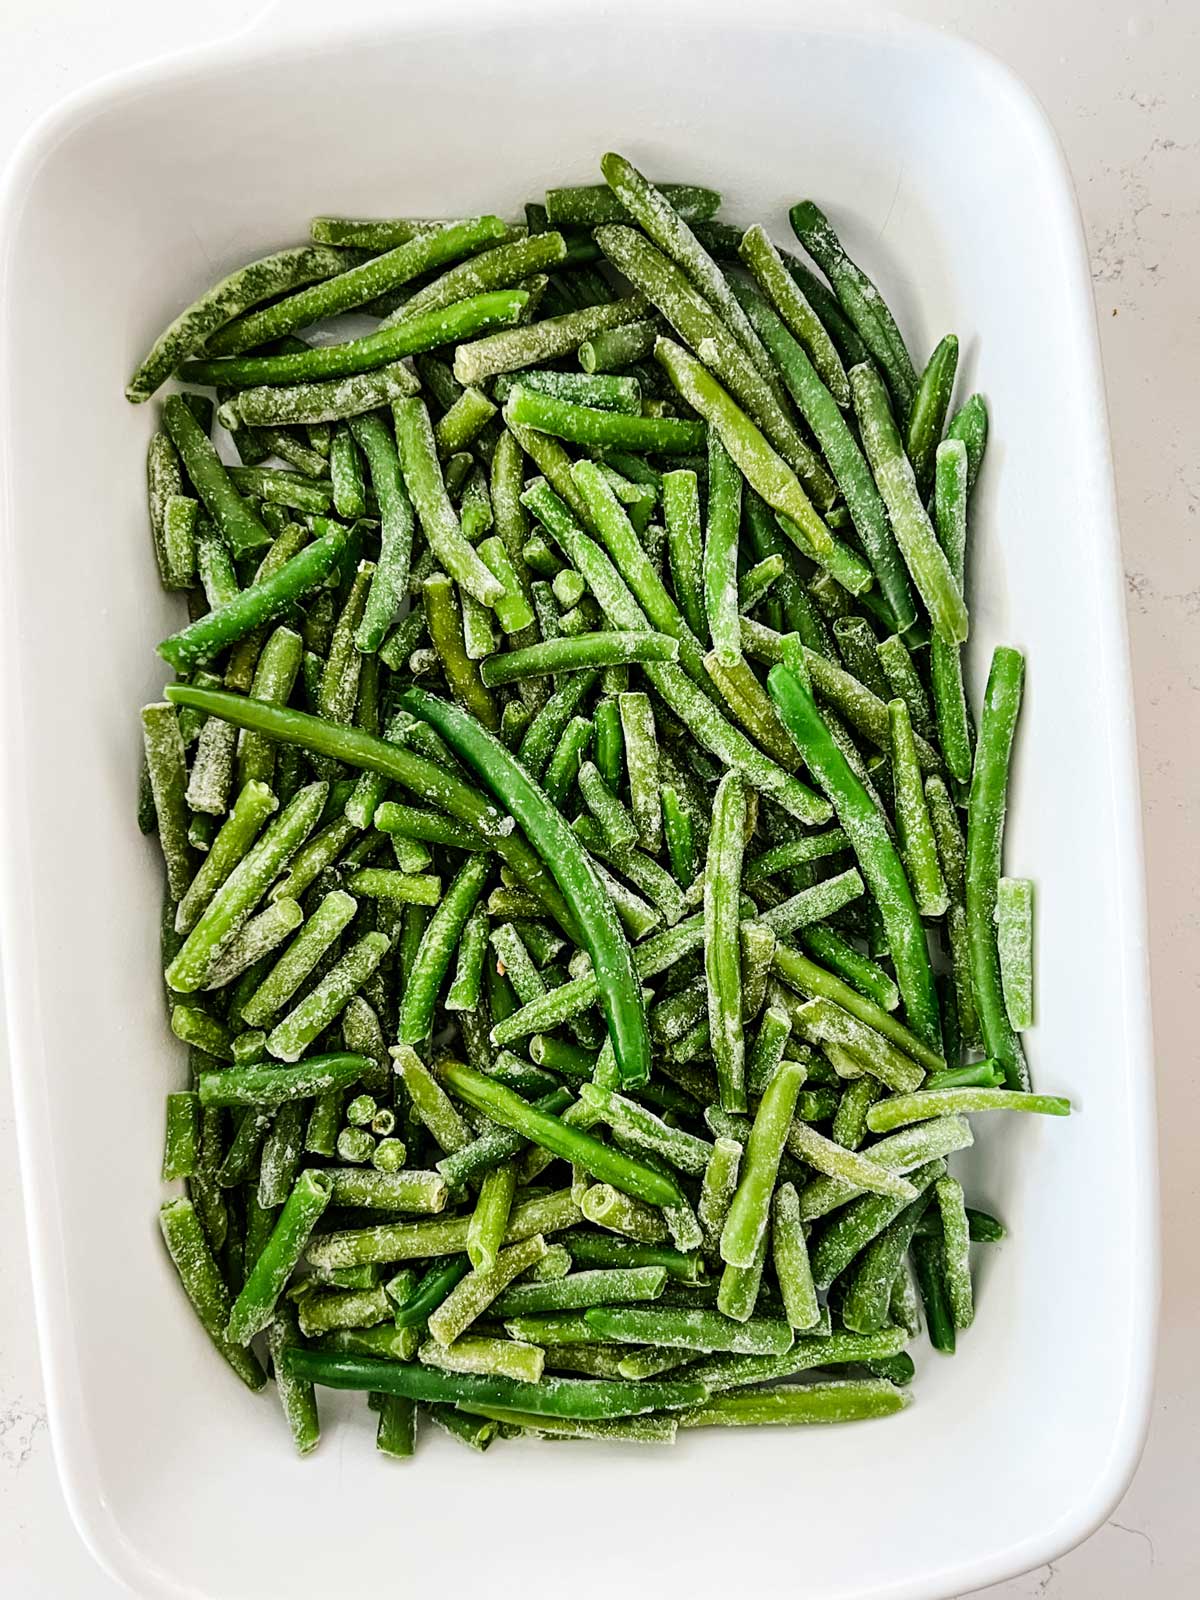 Frozen green beans in a 13 x 9 casserole dish.